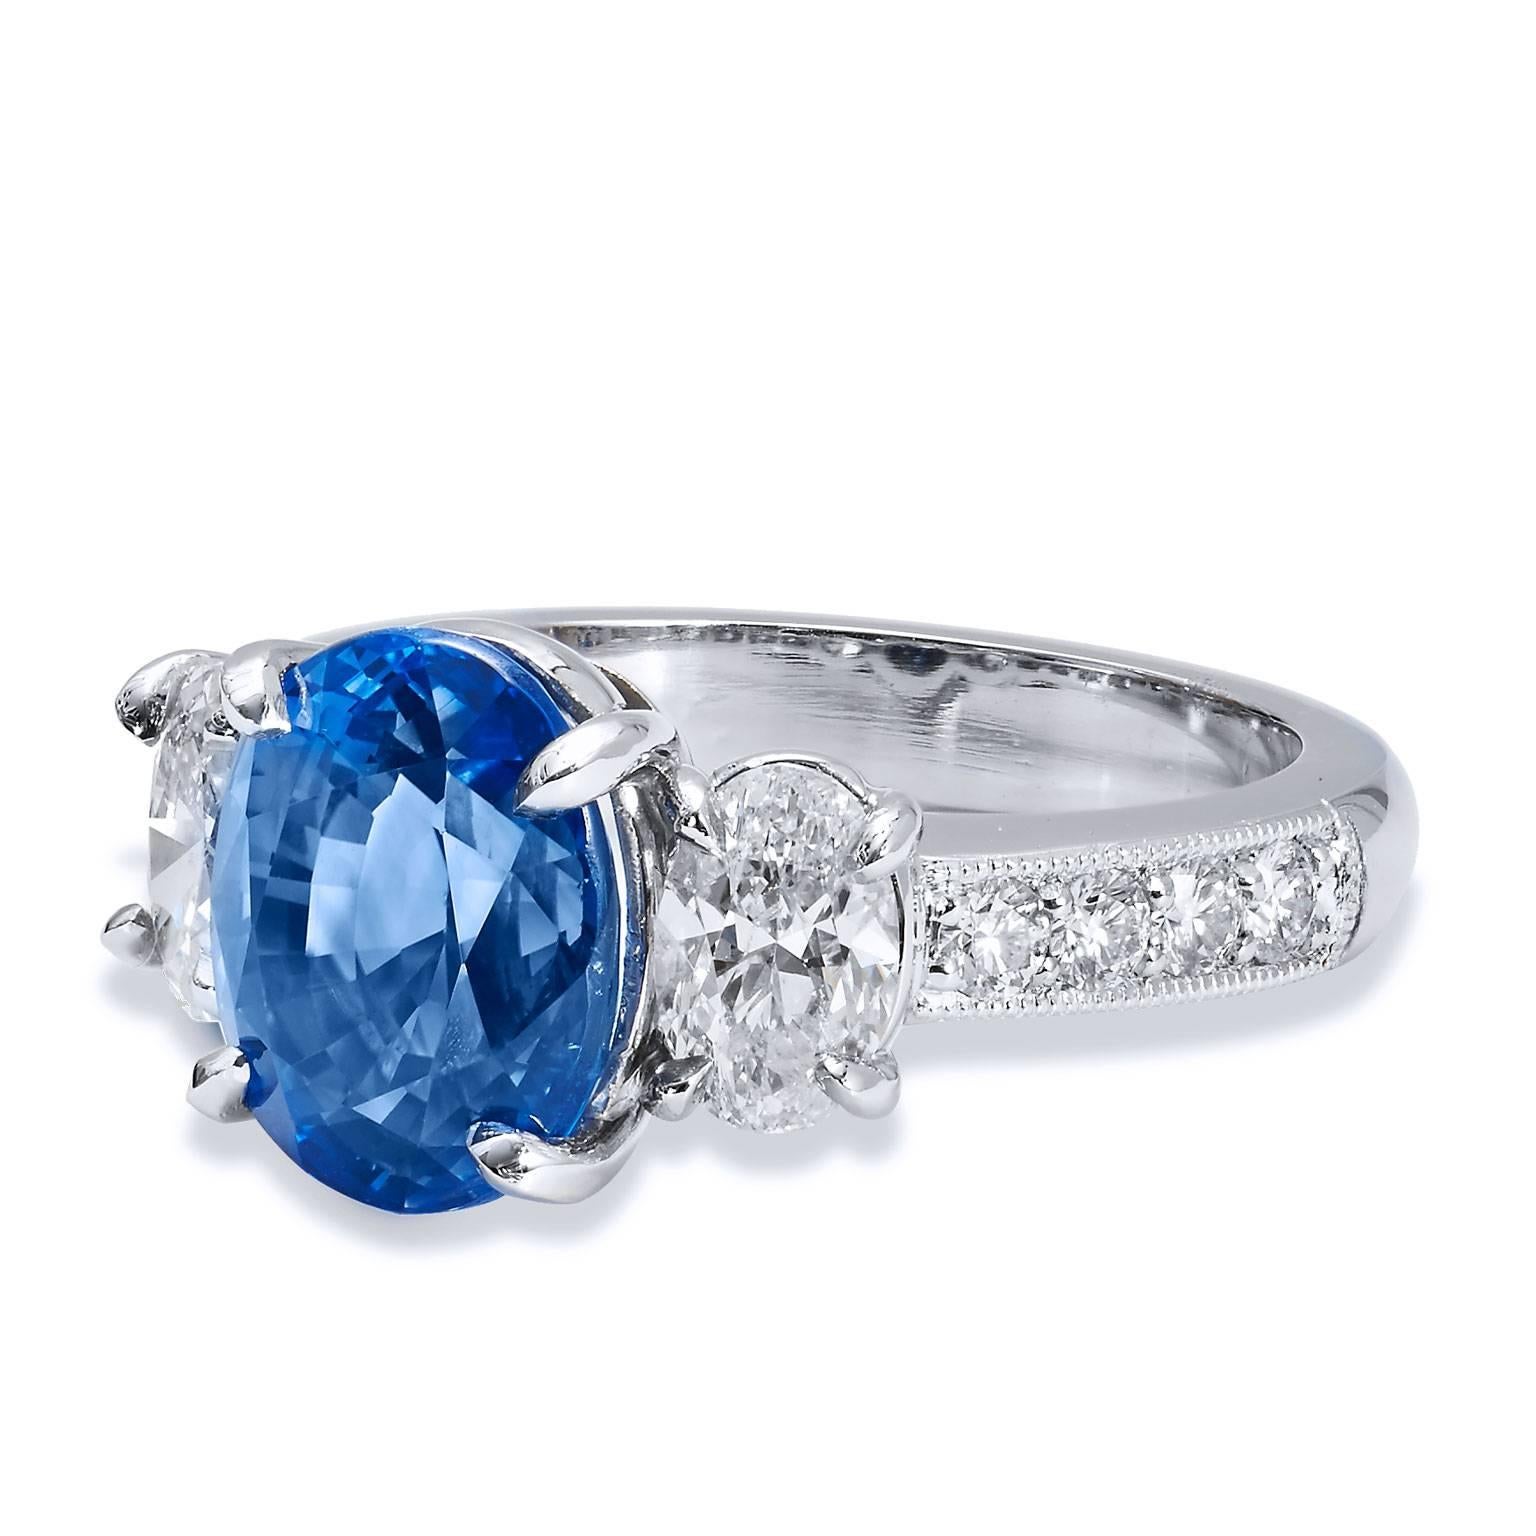 GIA zertifiziert 4,32 Karat Madagaskar blauer Saphir und Diamant Platin Ring

Dies ist ein atemberaubender Ring aus blauem Saphir, Diamant und Platin.  Der Mittelstein ist ein großer blauer Saphir aus Madagaskar von 4,32 Karat und ist in der Mitte